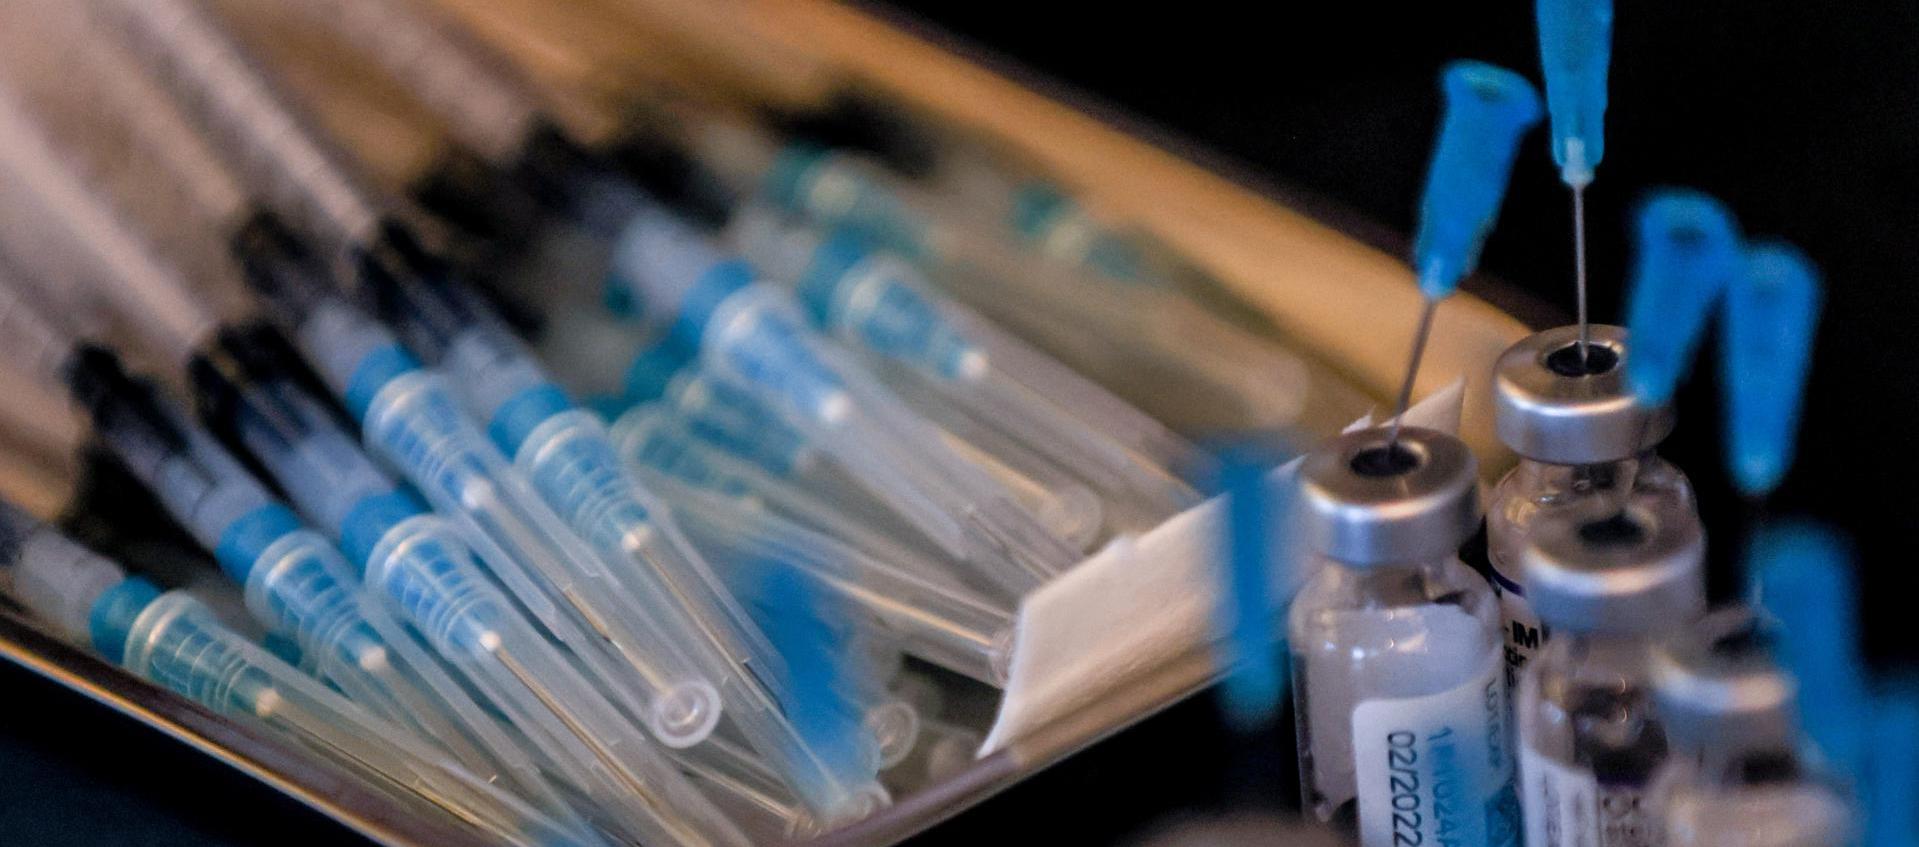 Las jeringas con la vacuna Moderna contra Covid-19 se exhiben durante una campaña de vacunación en Berlín el 4 de enero de 2021.